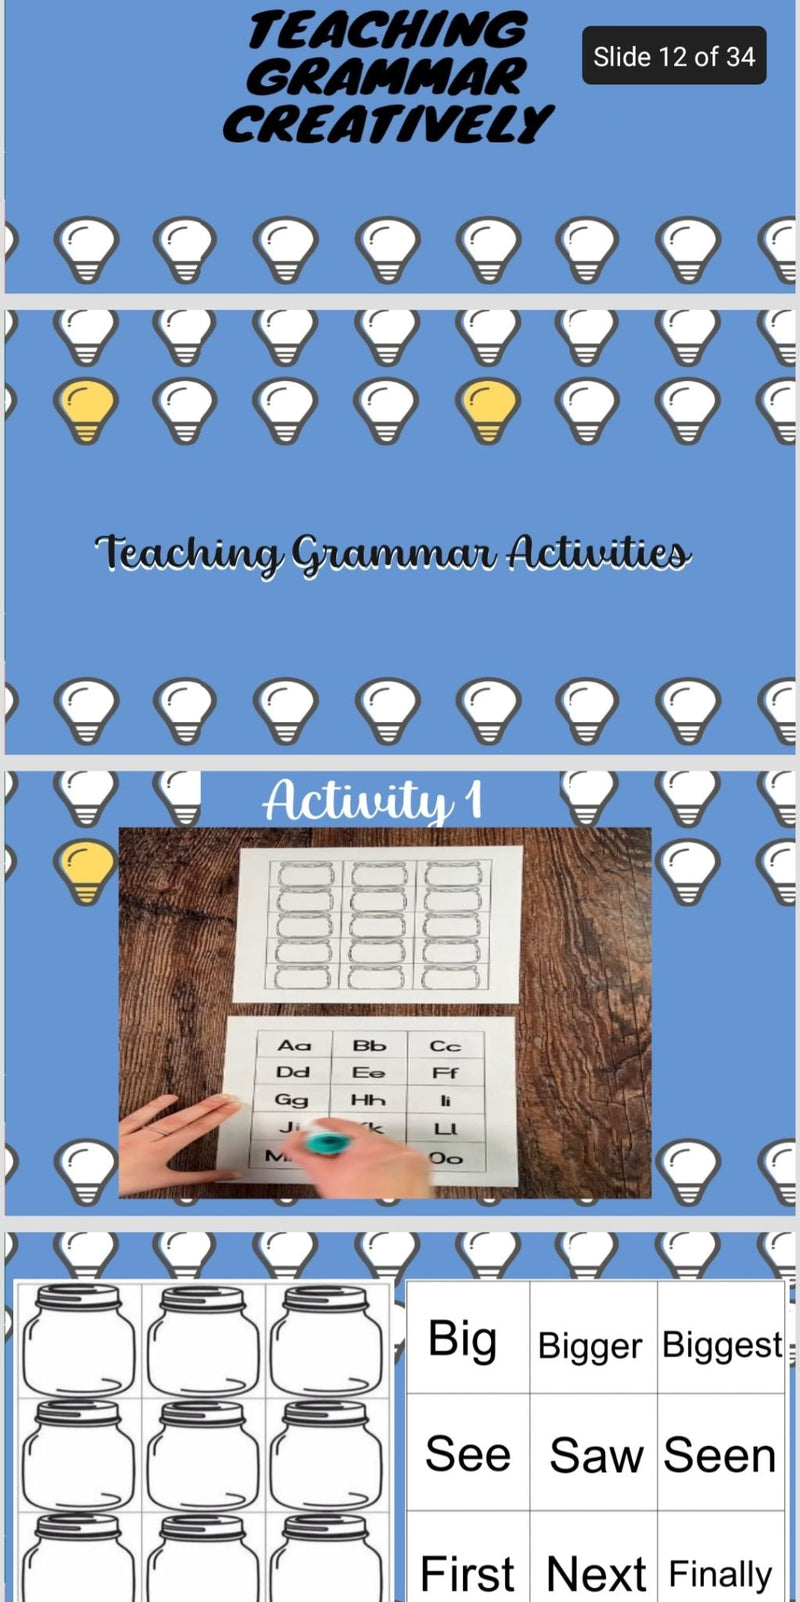 Teaching Grammar Creatively Workshop - 4